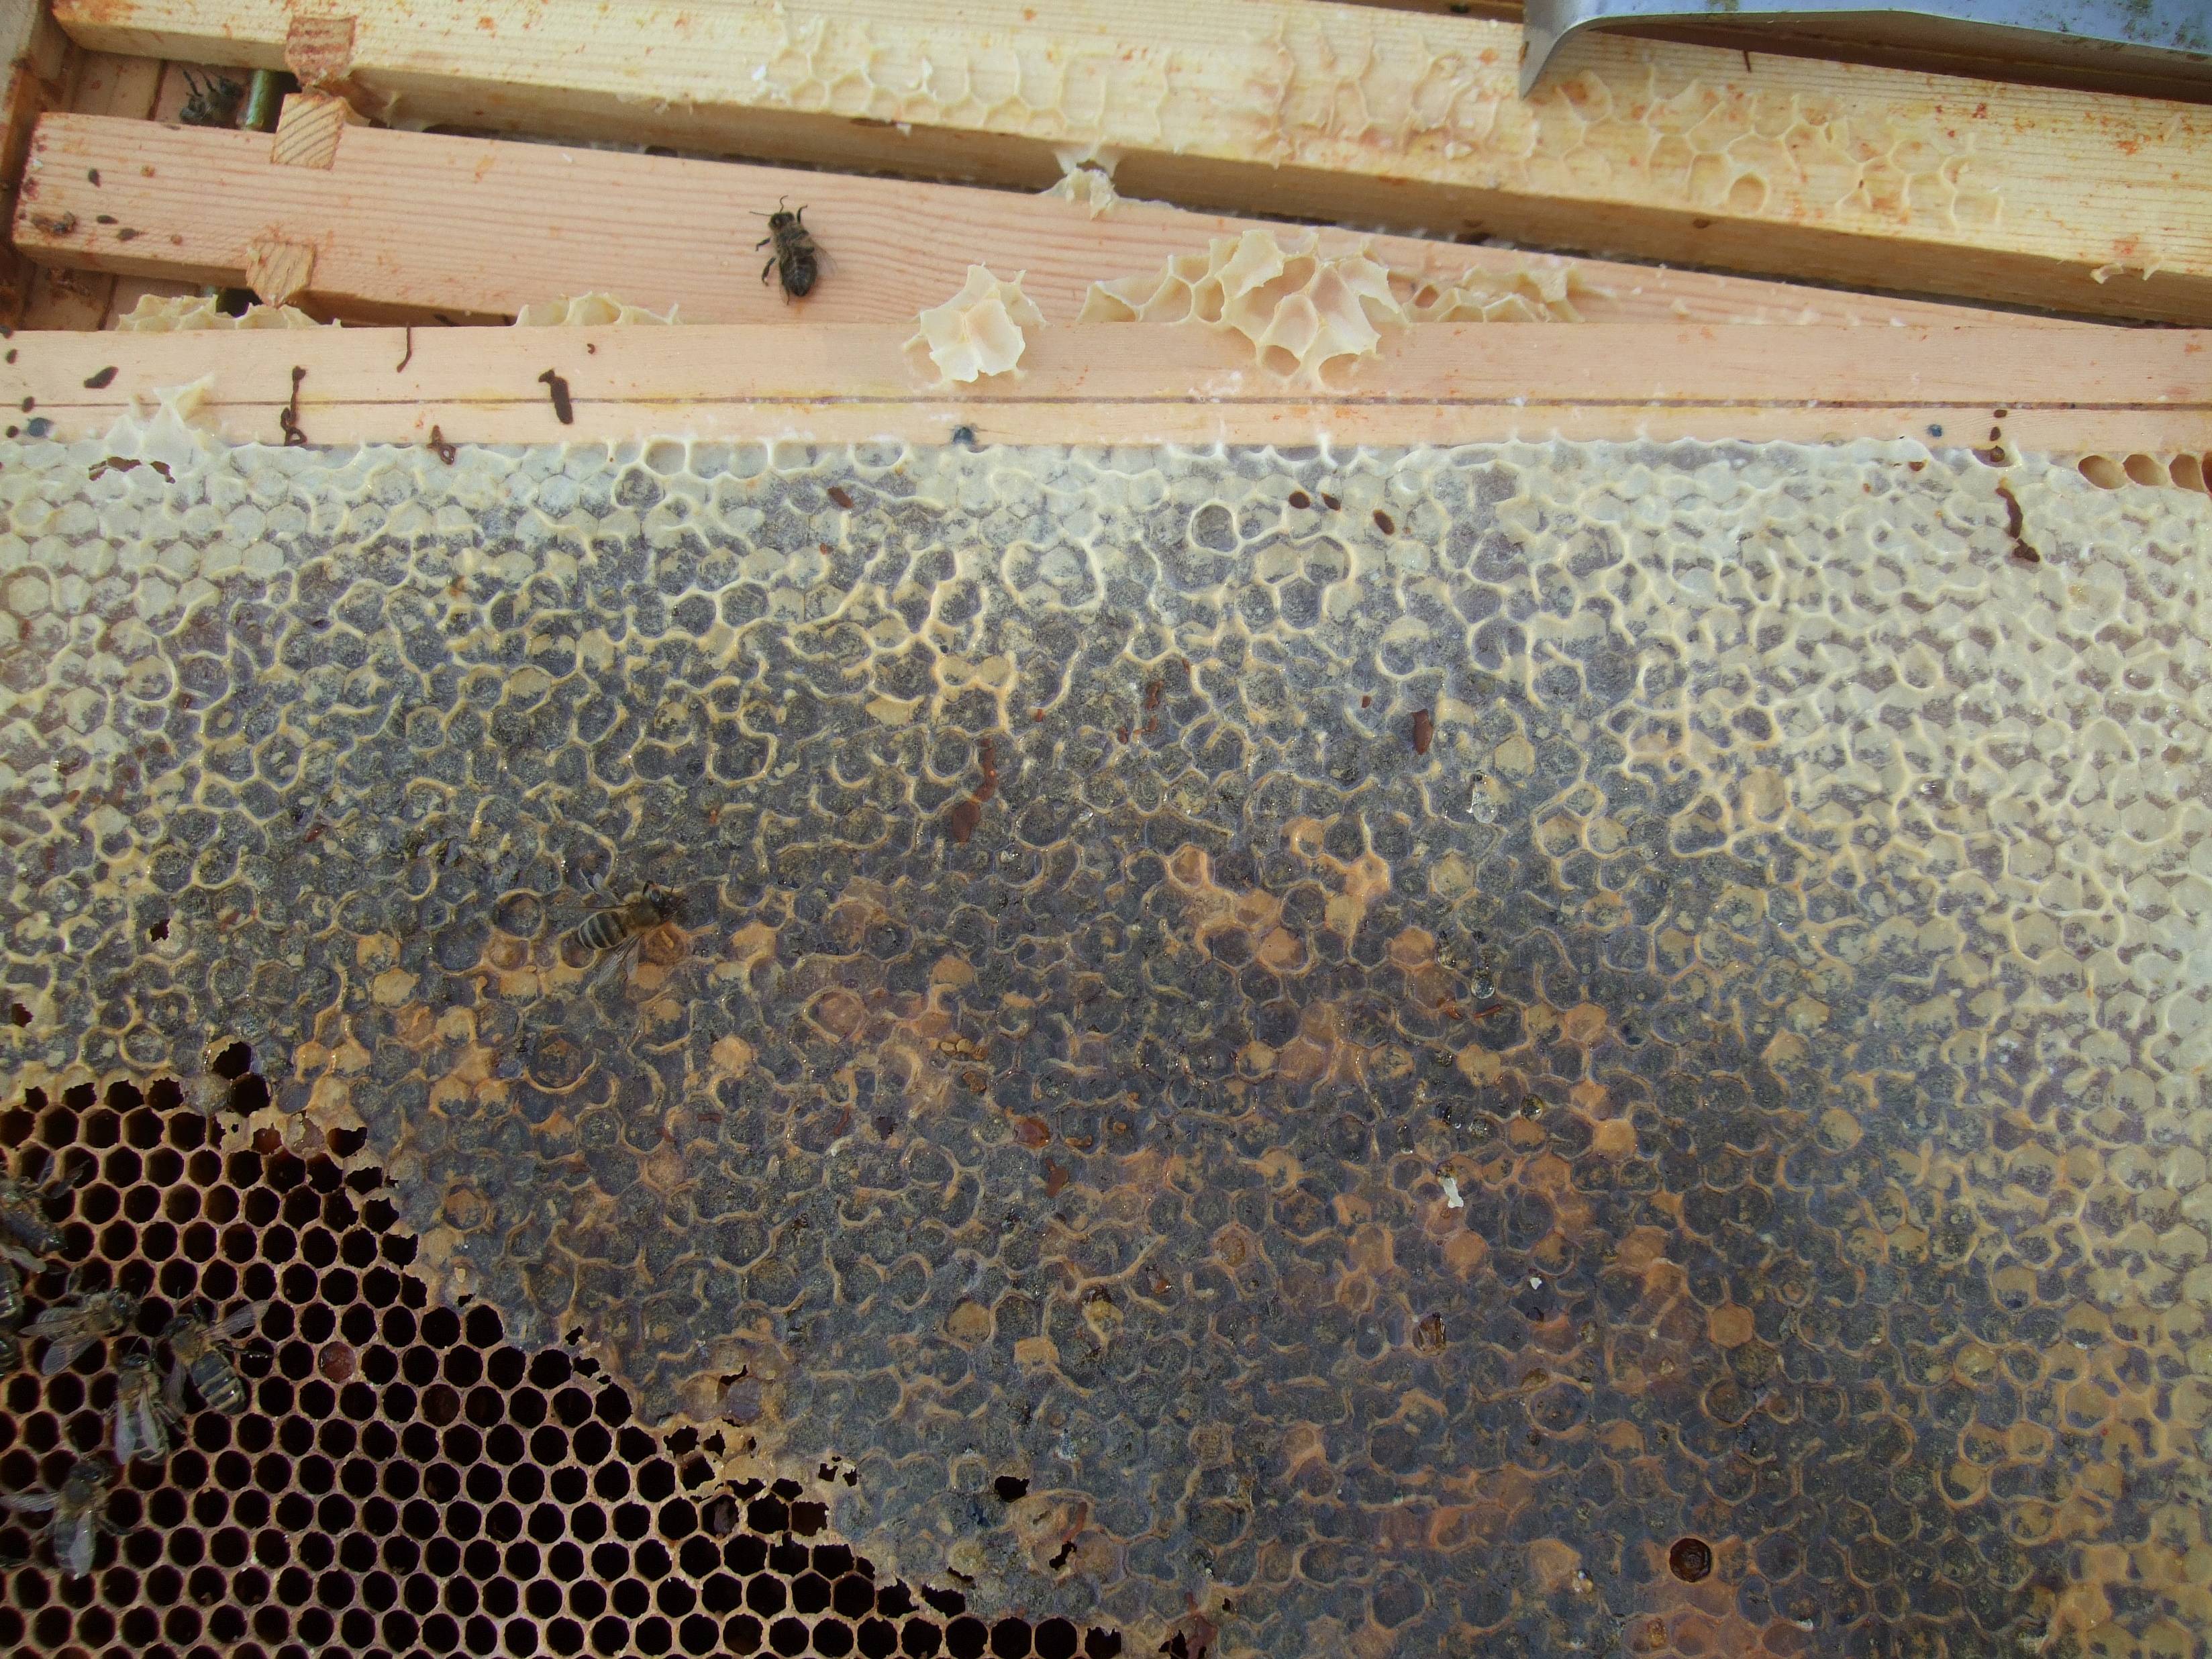 Основные болезни пчел и их лечение